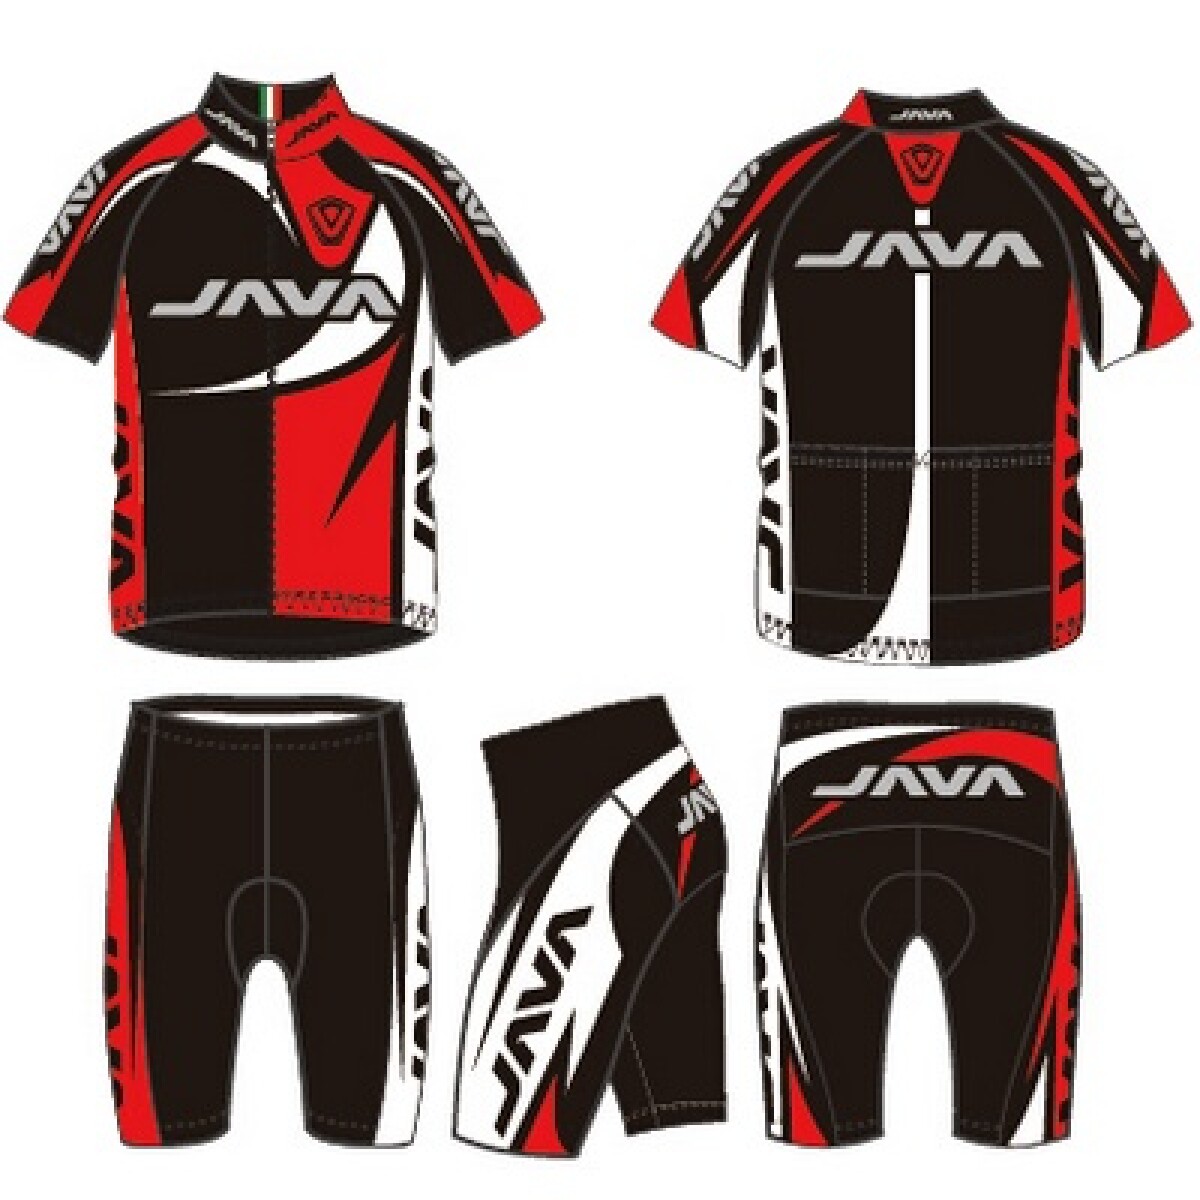 Java - Malla de Ciclista -- YA-011D - Color: Negro/rojo/blanco Talle: S - 001 